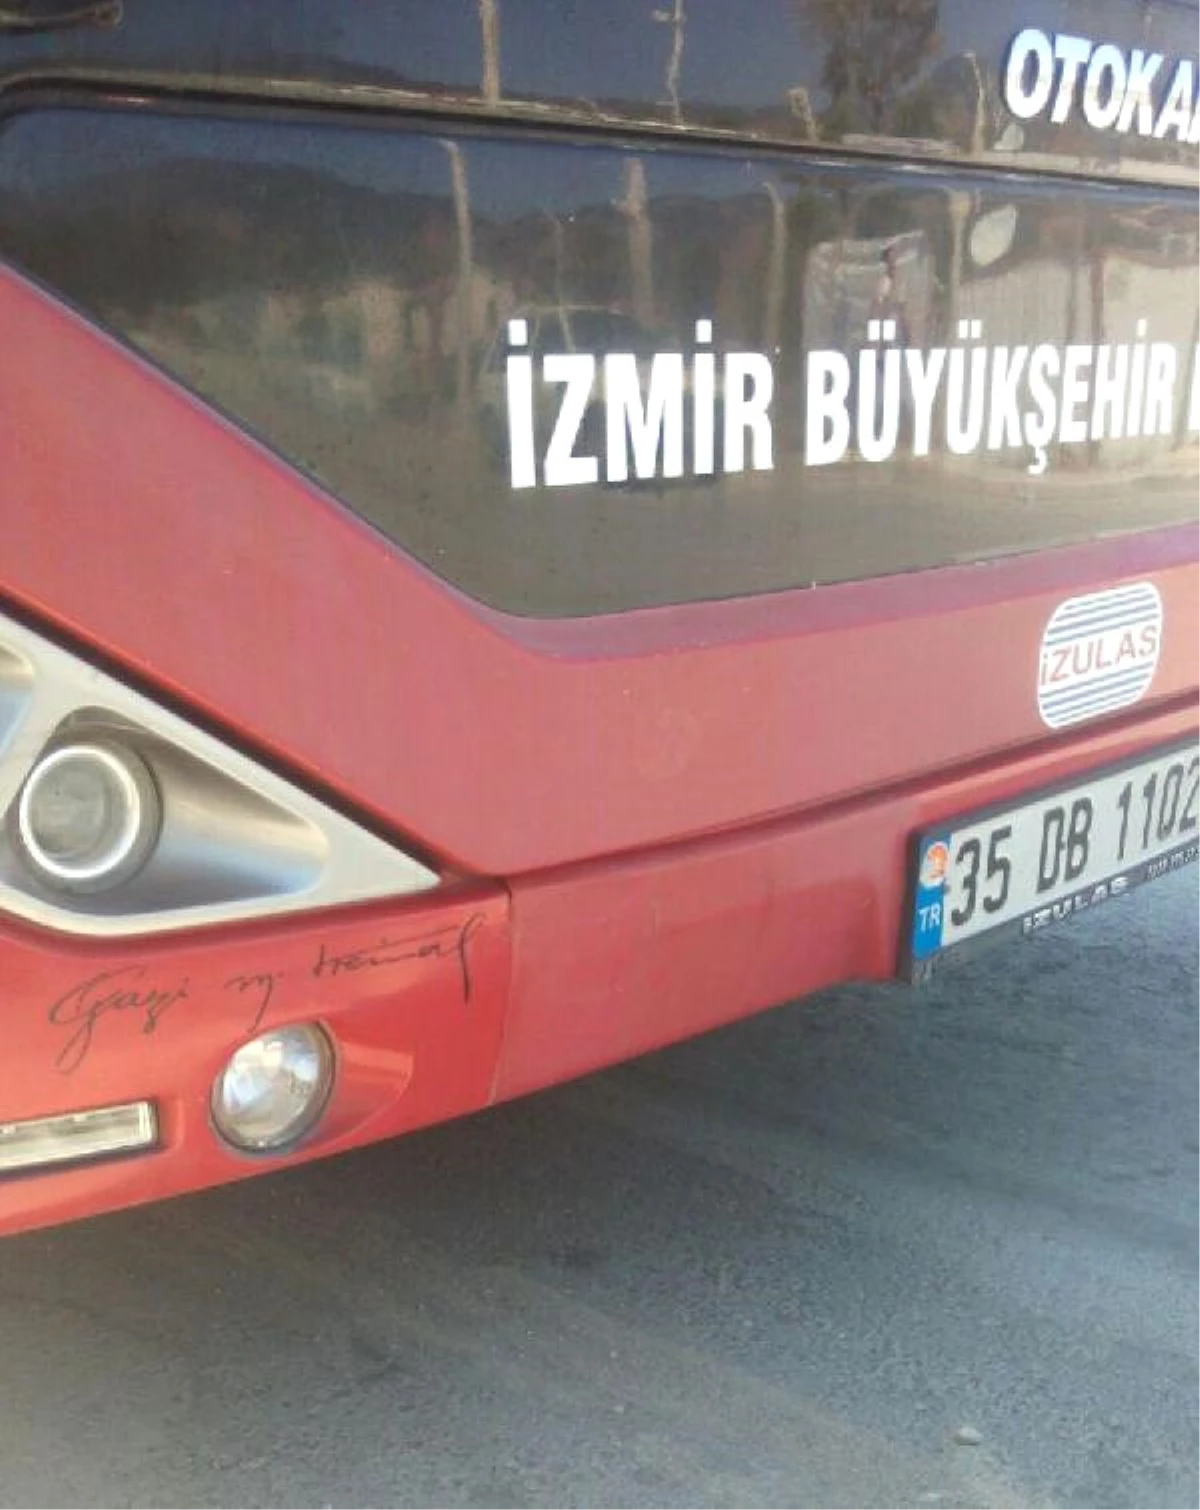 Belediye Otobüsündeki Atatürk İmzası ve Posterine Tutanak